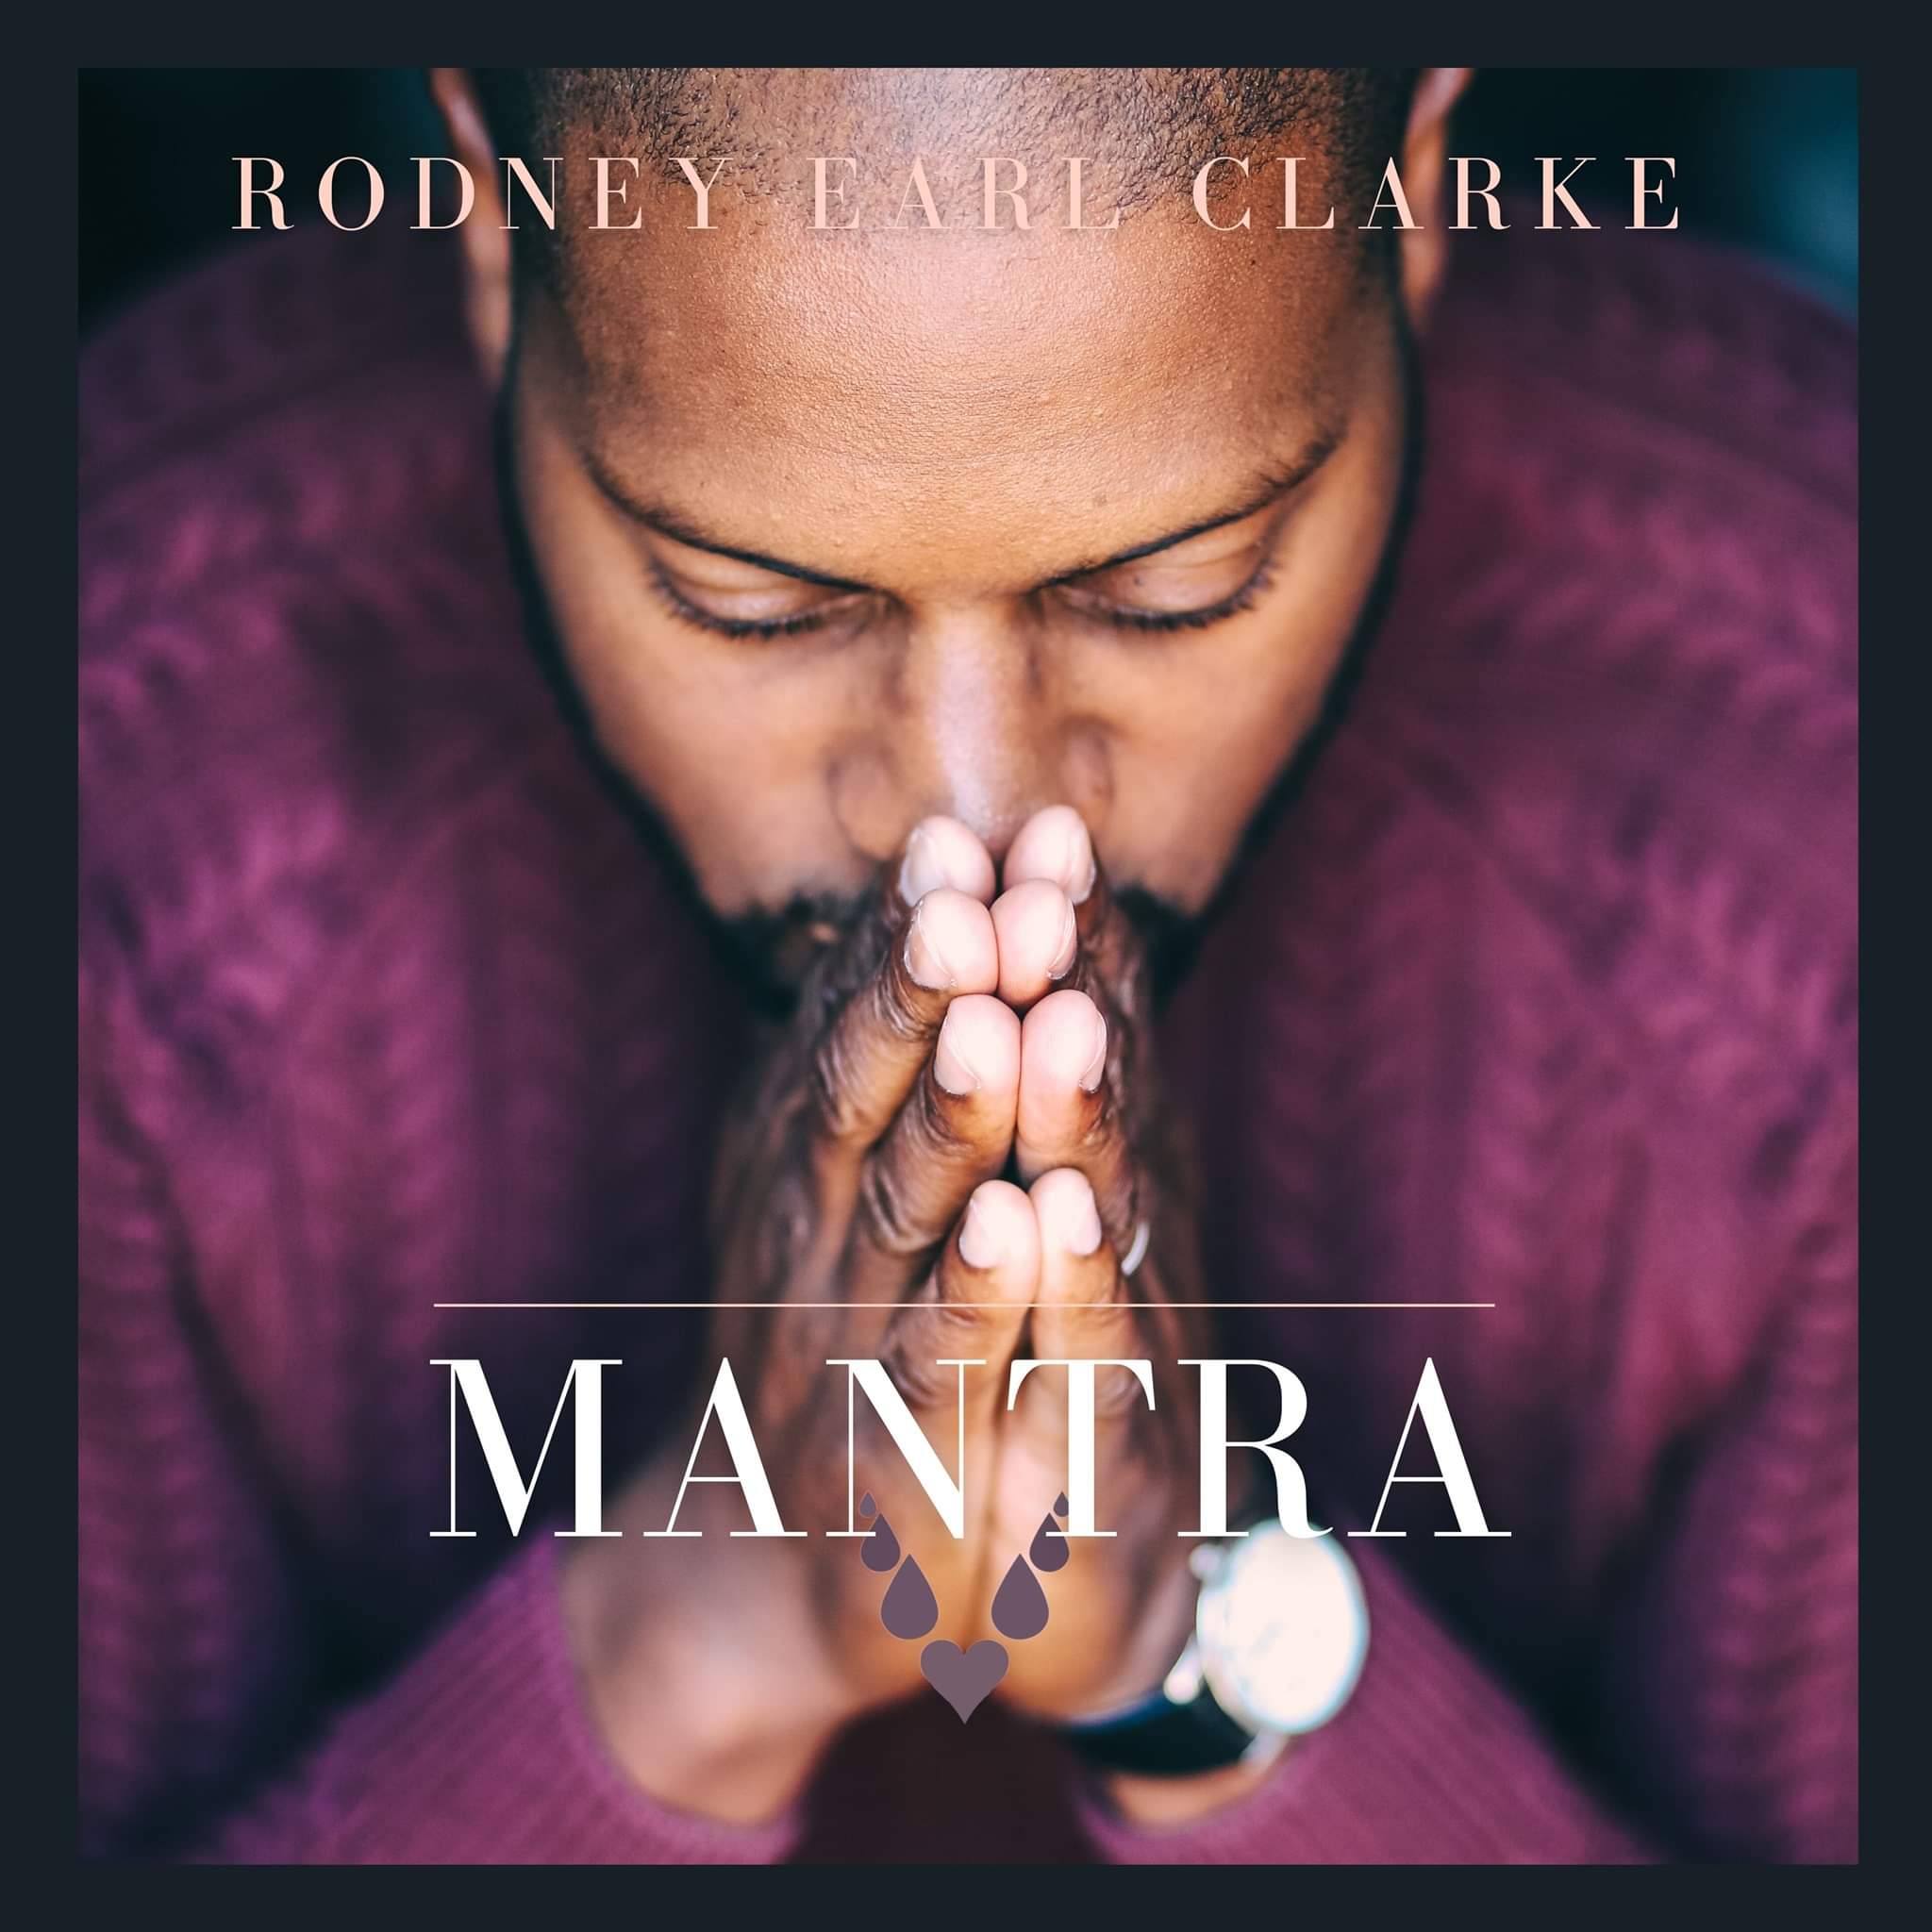 Rodney Earl Clarke - Mantra